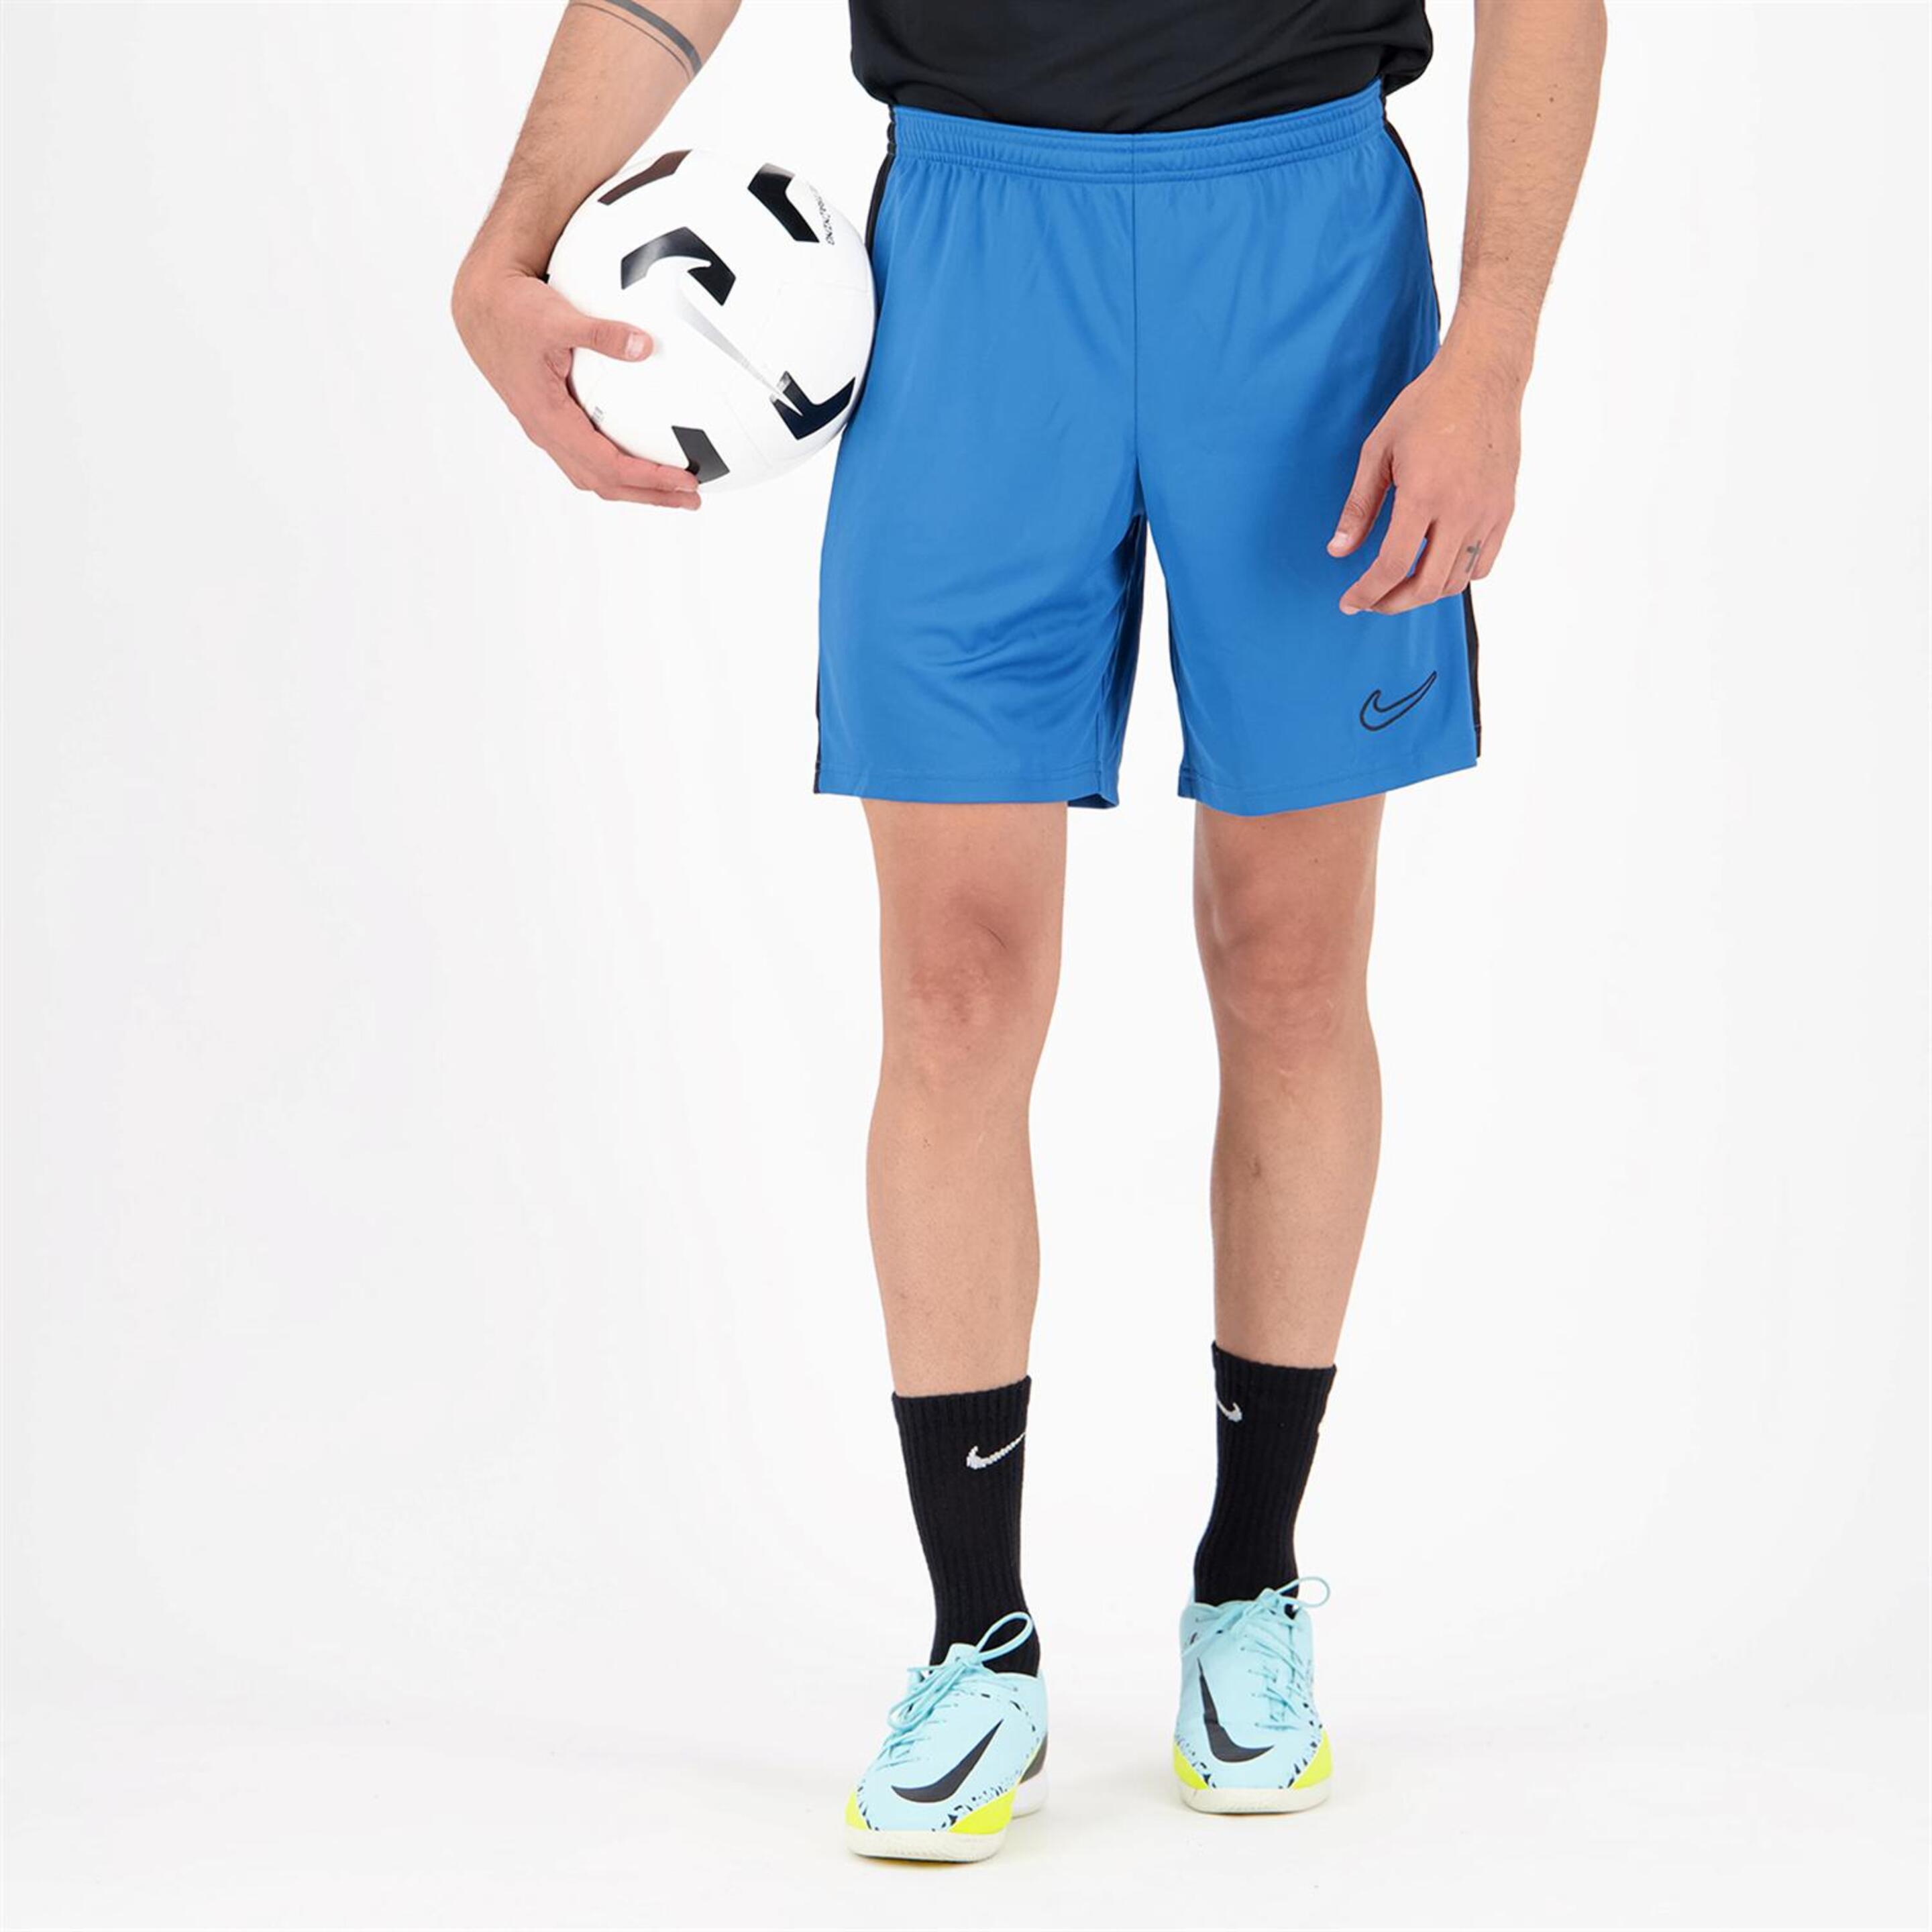 Nike Acd23 - azul - Calções Futebol Homem